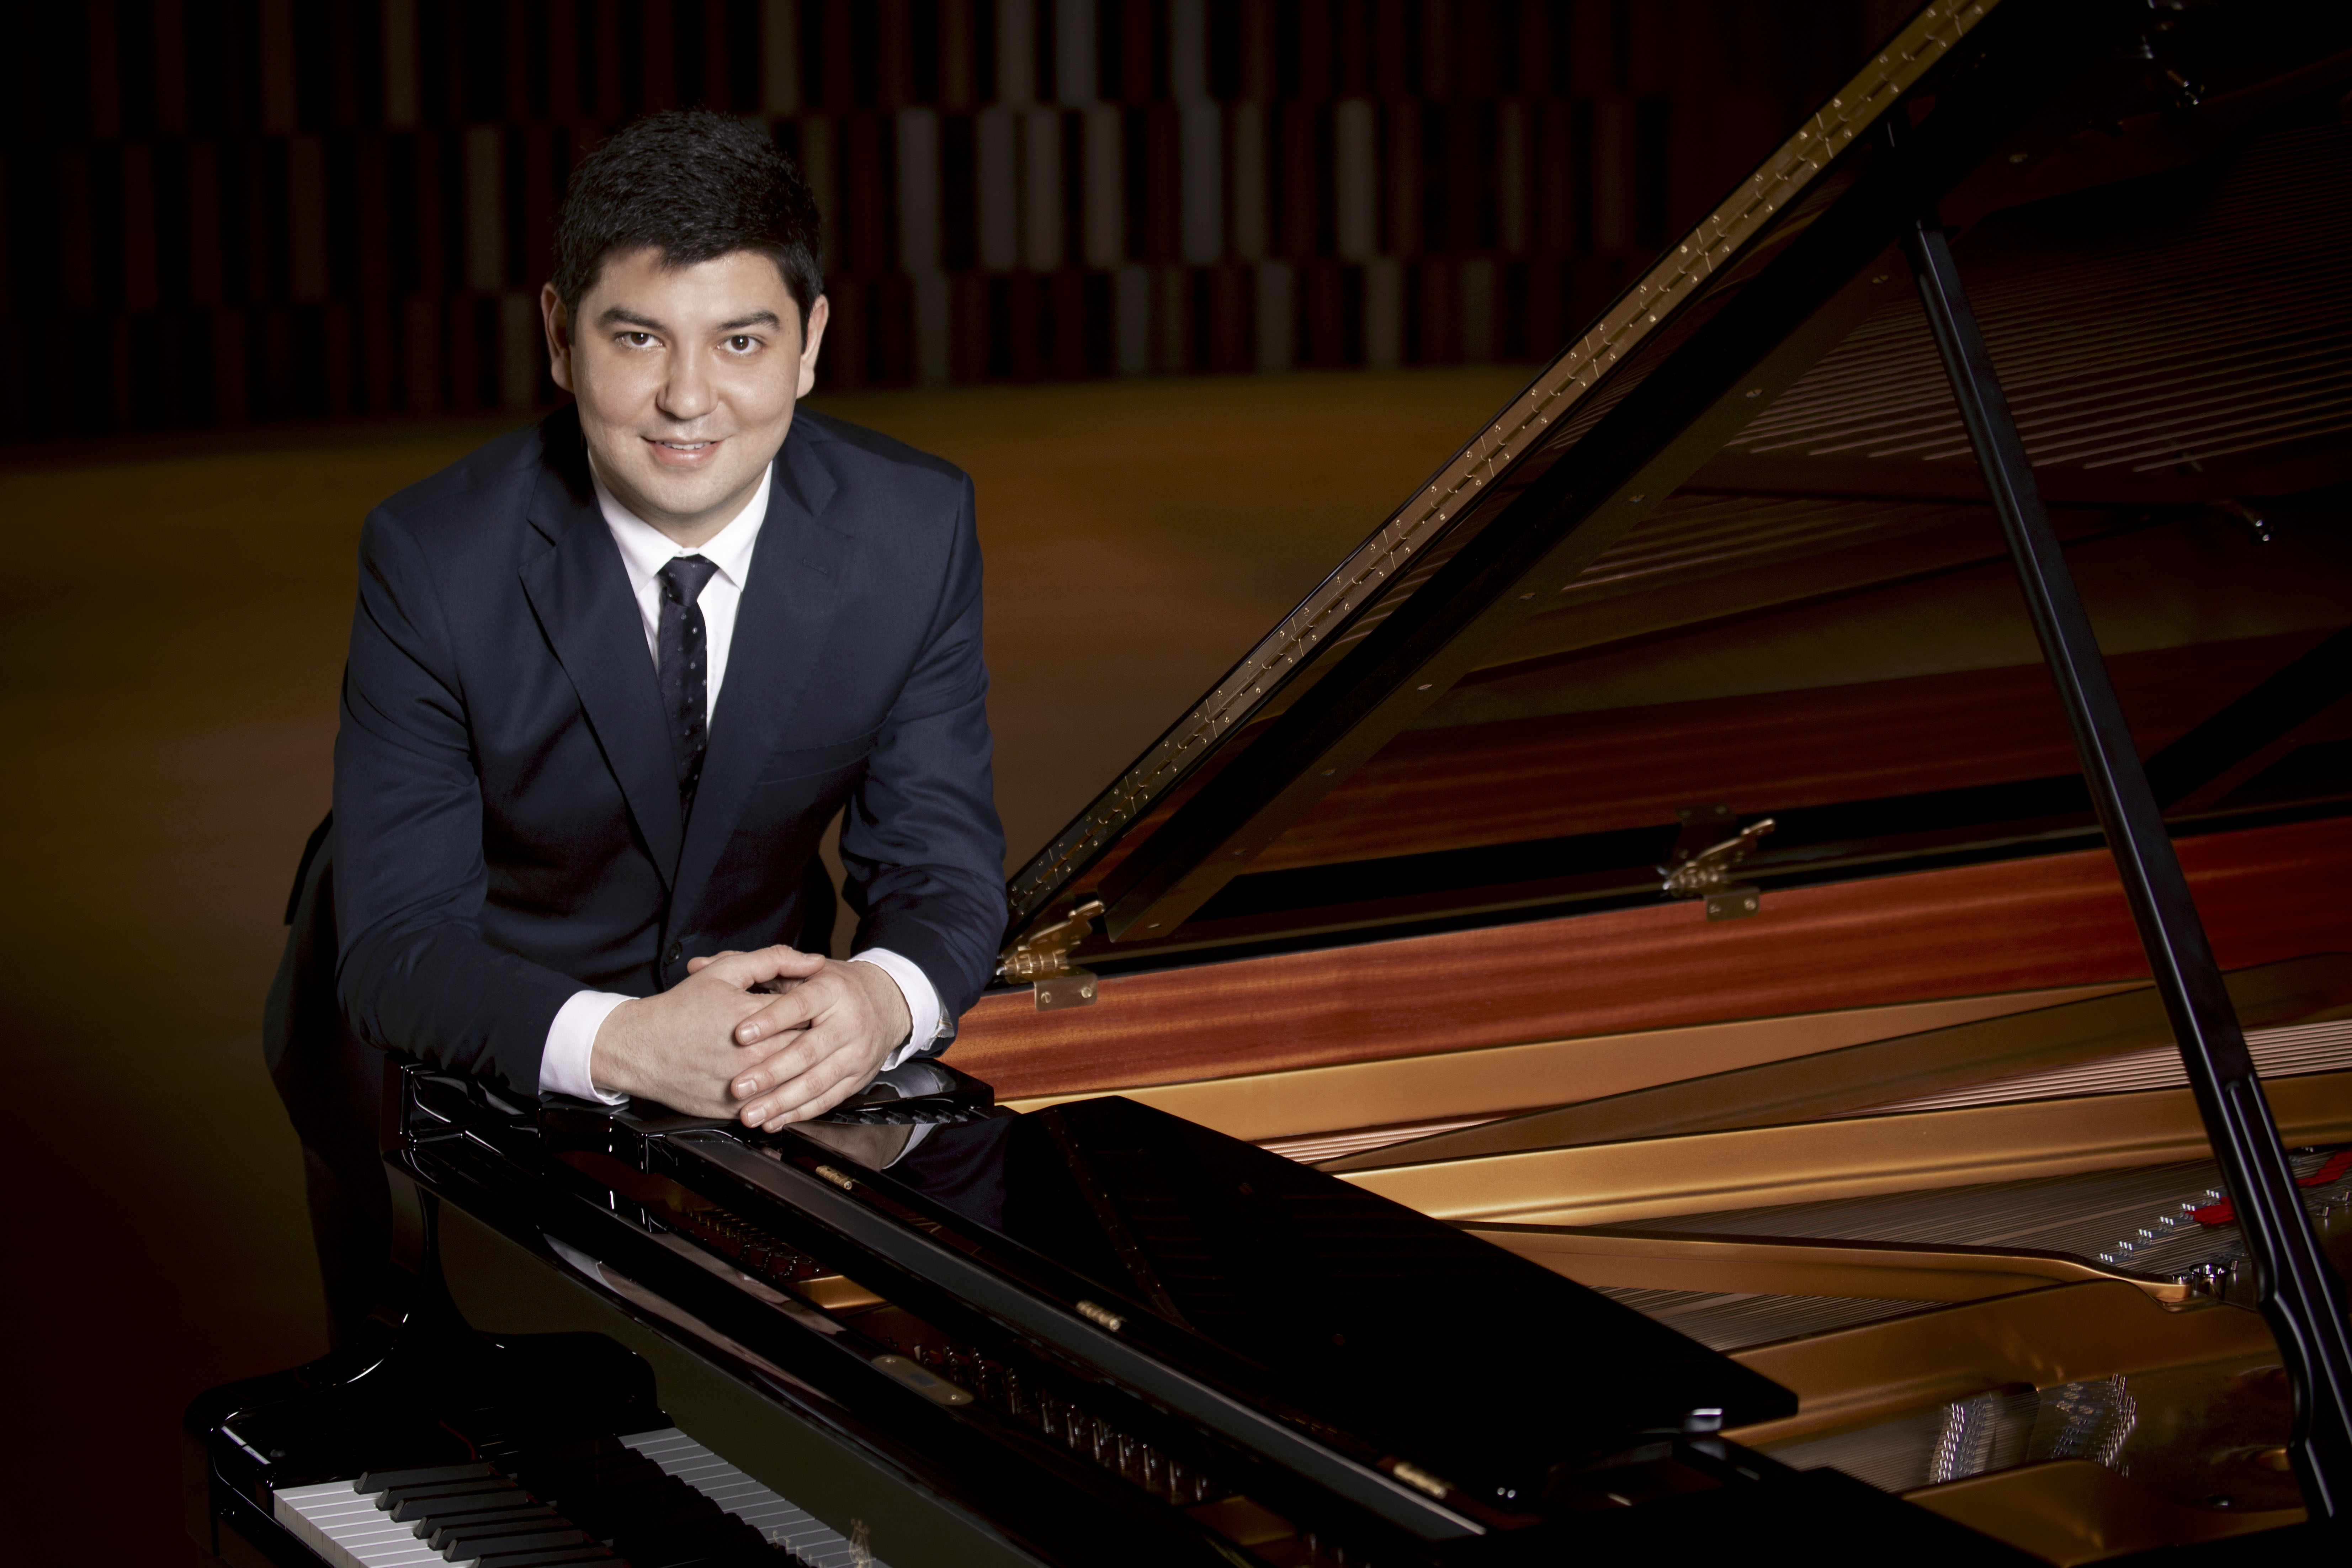 Pianist Behzod Abduraimov